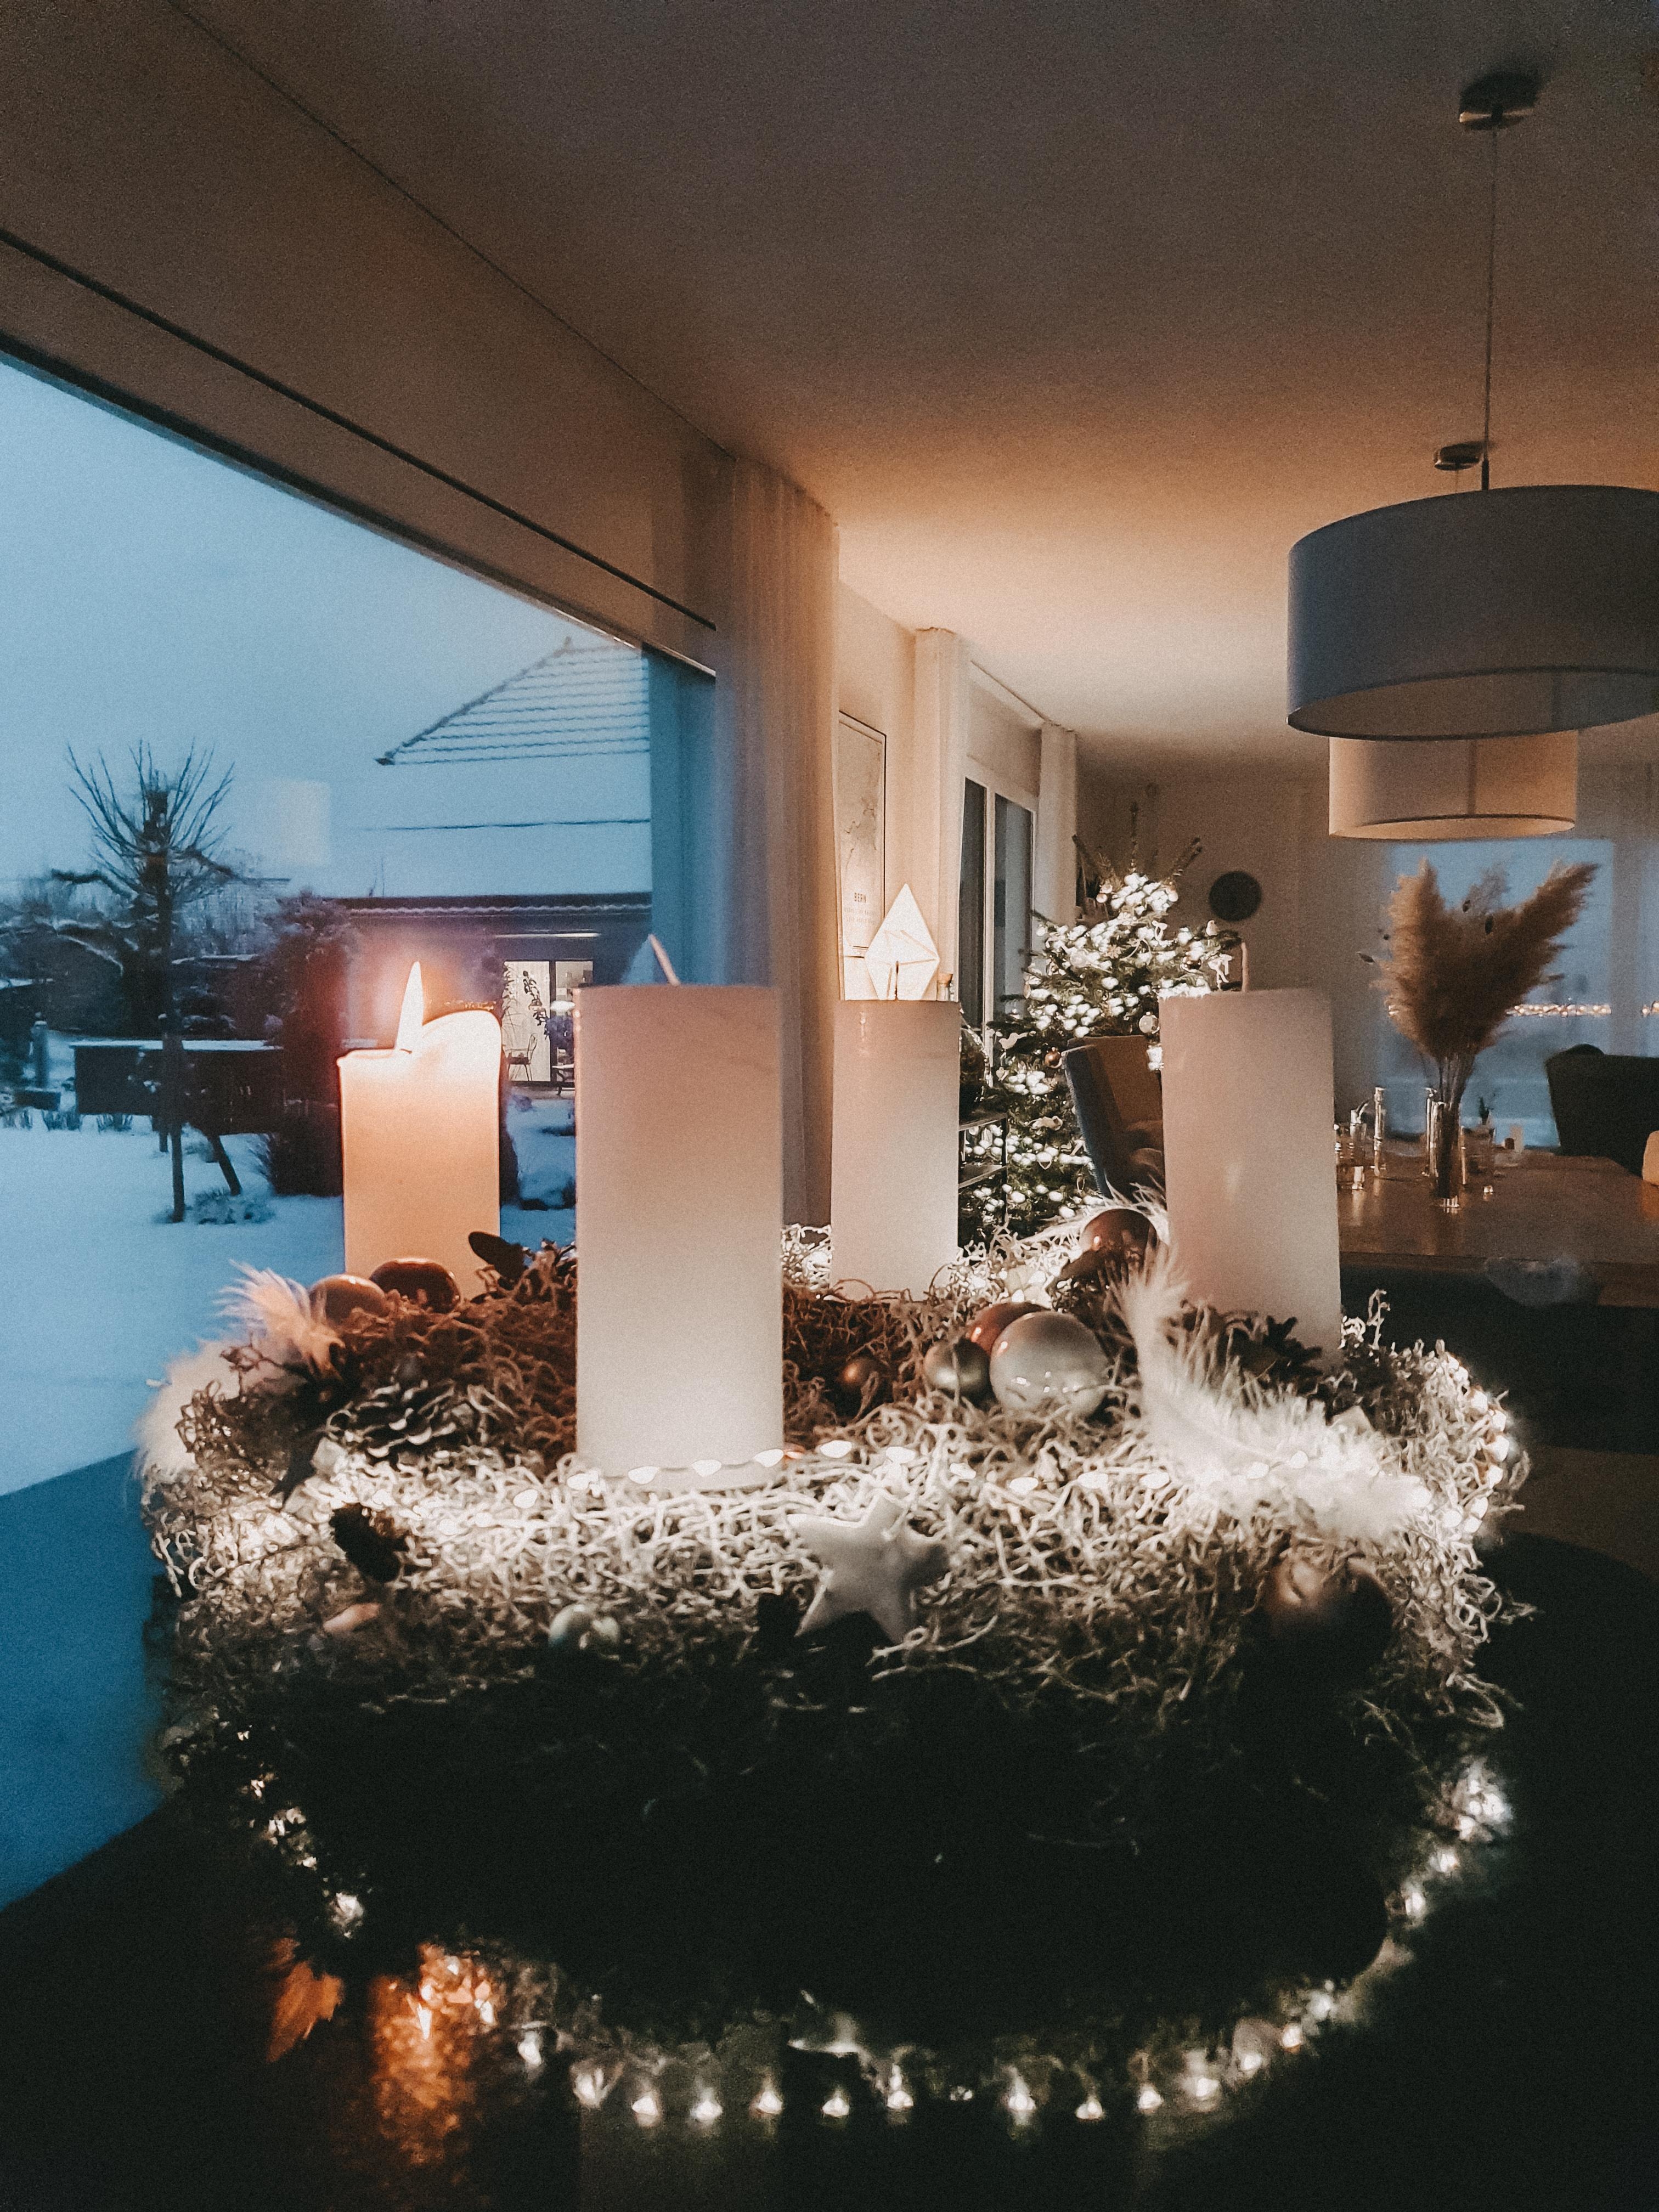 Cozy time 🌲⭐
#advent #adventskranz #weihnachtszeit